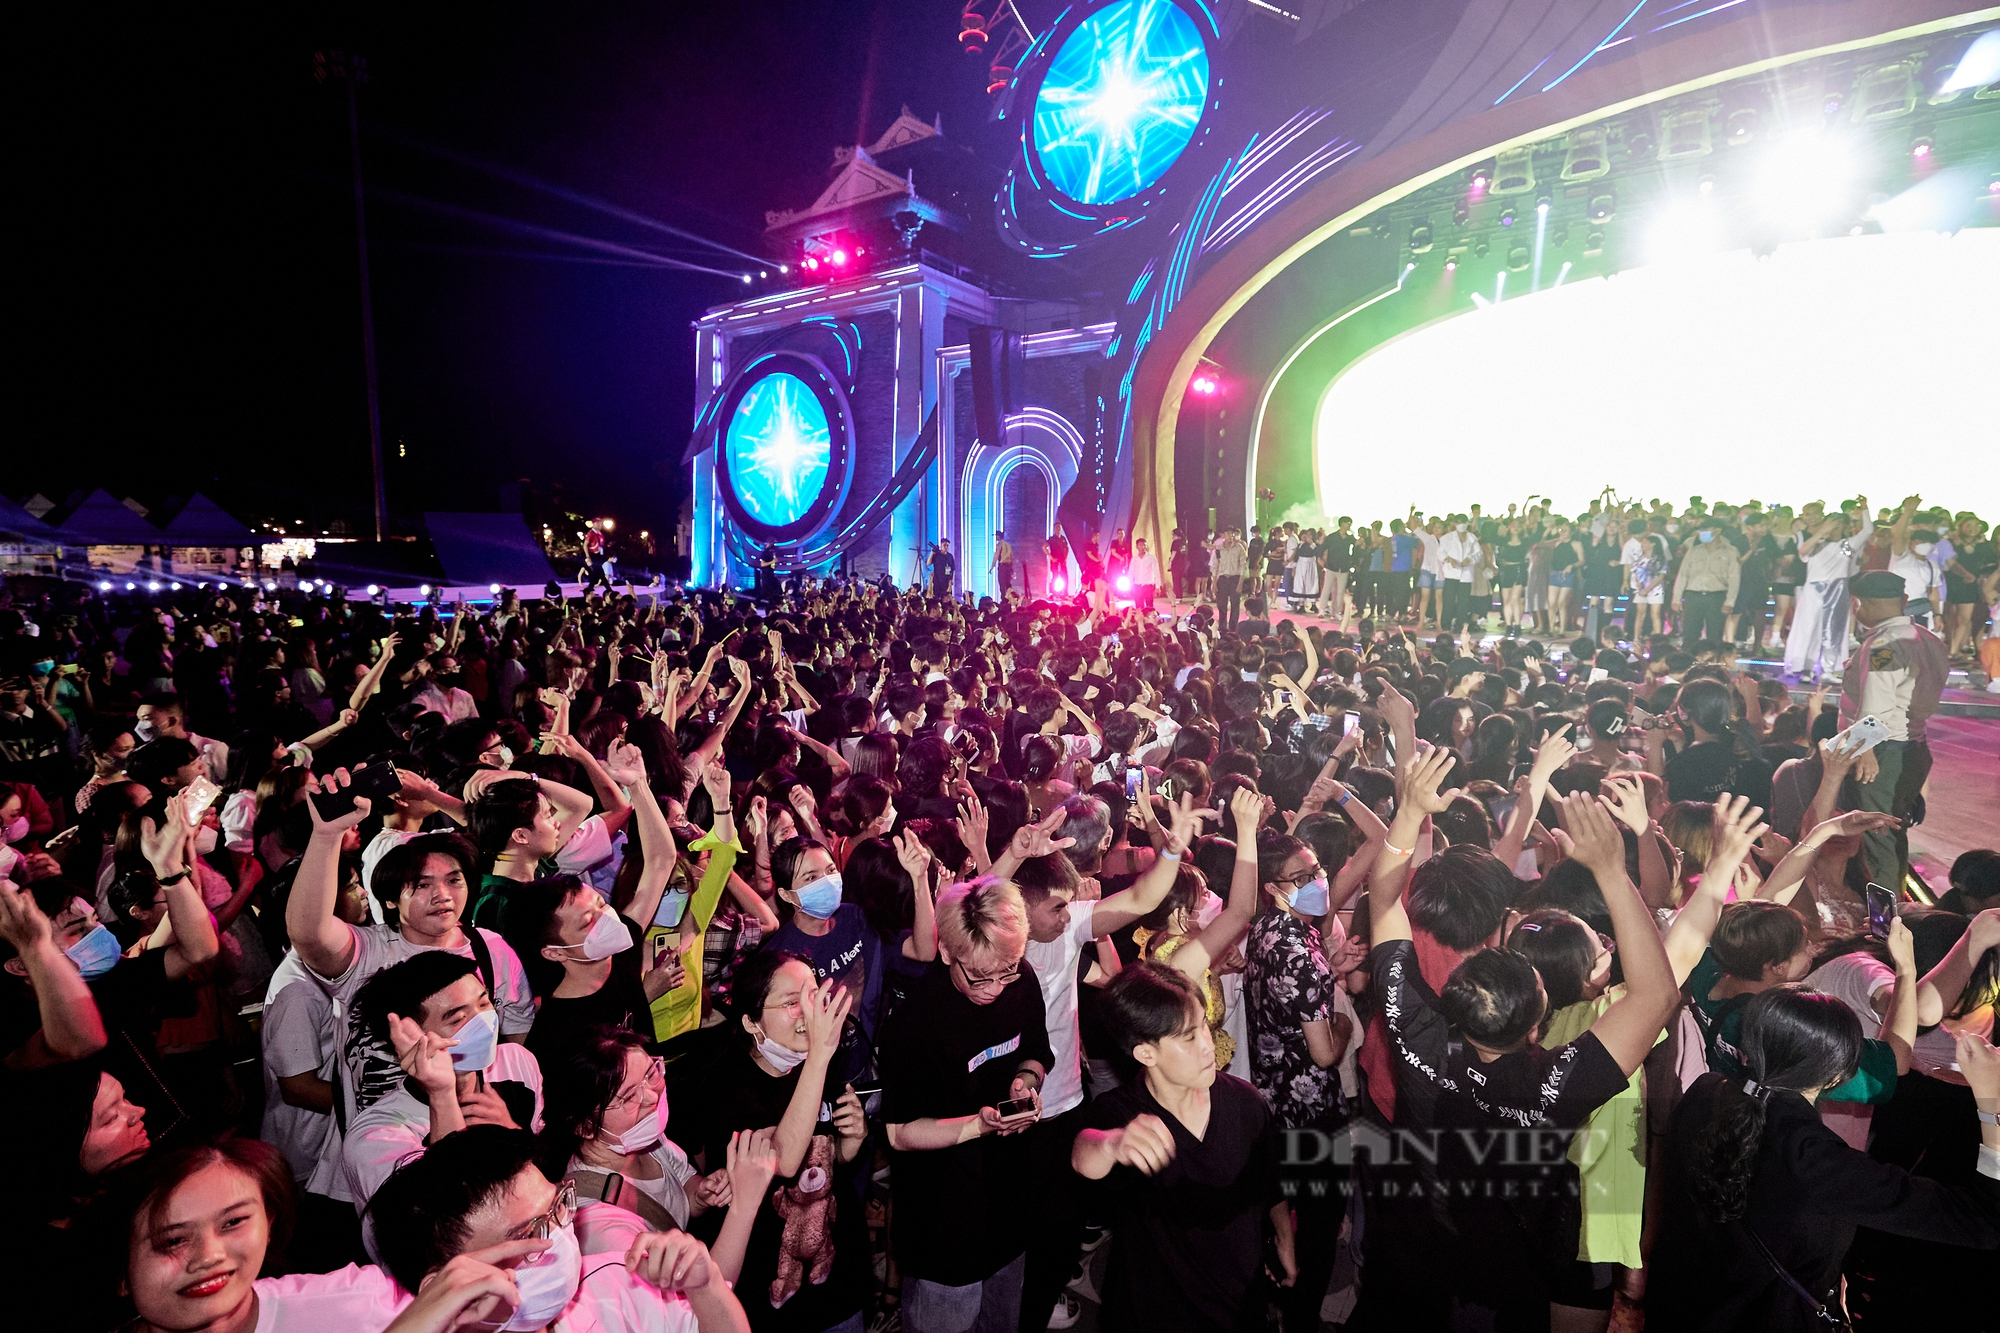 20 ngàn khán giả bùng nổ với đại nhạc hội quy mô lớn tại Đà Nẵng - Ảnh 4.